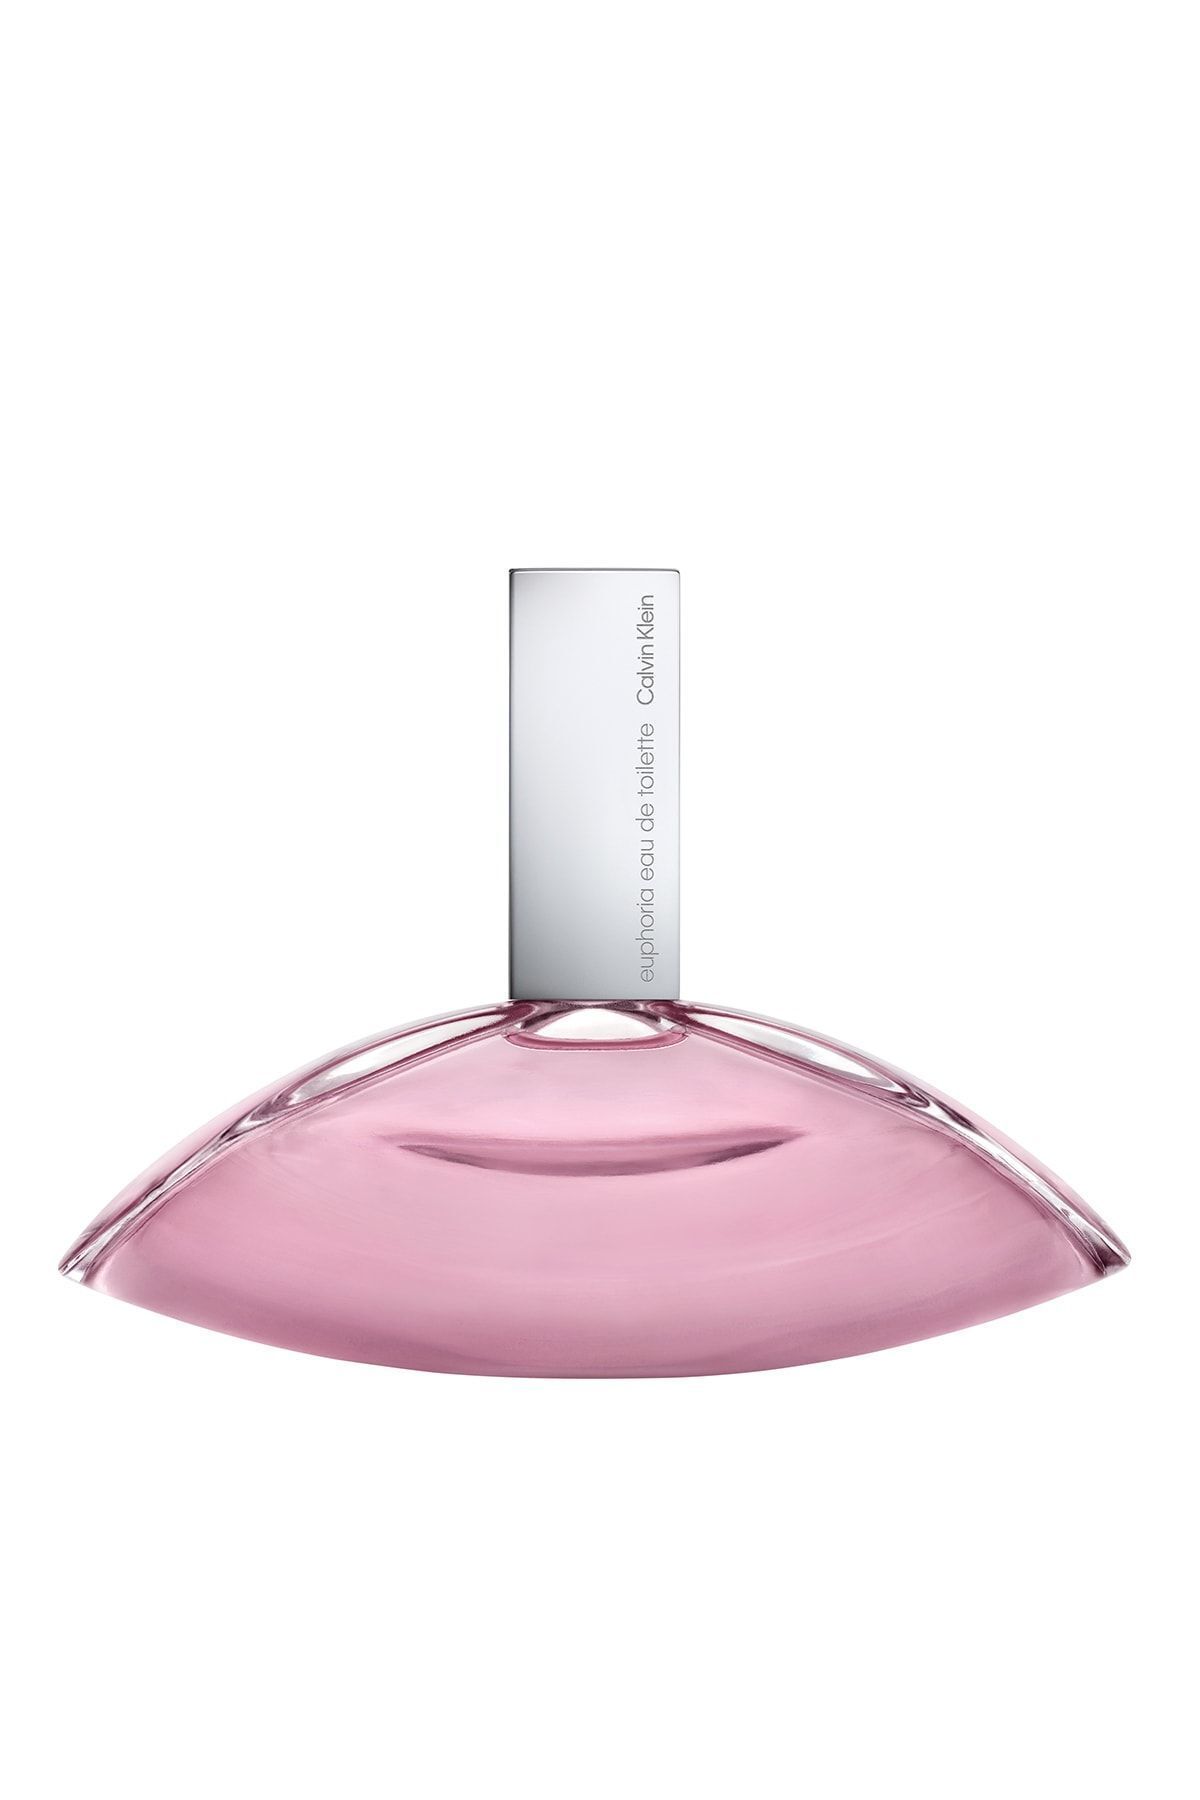 Calvin Klein Euphoria Edt 100 ml Kadın Parfümü